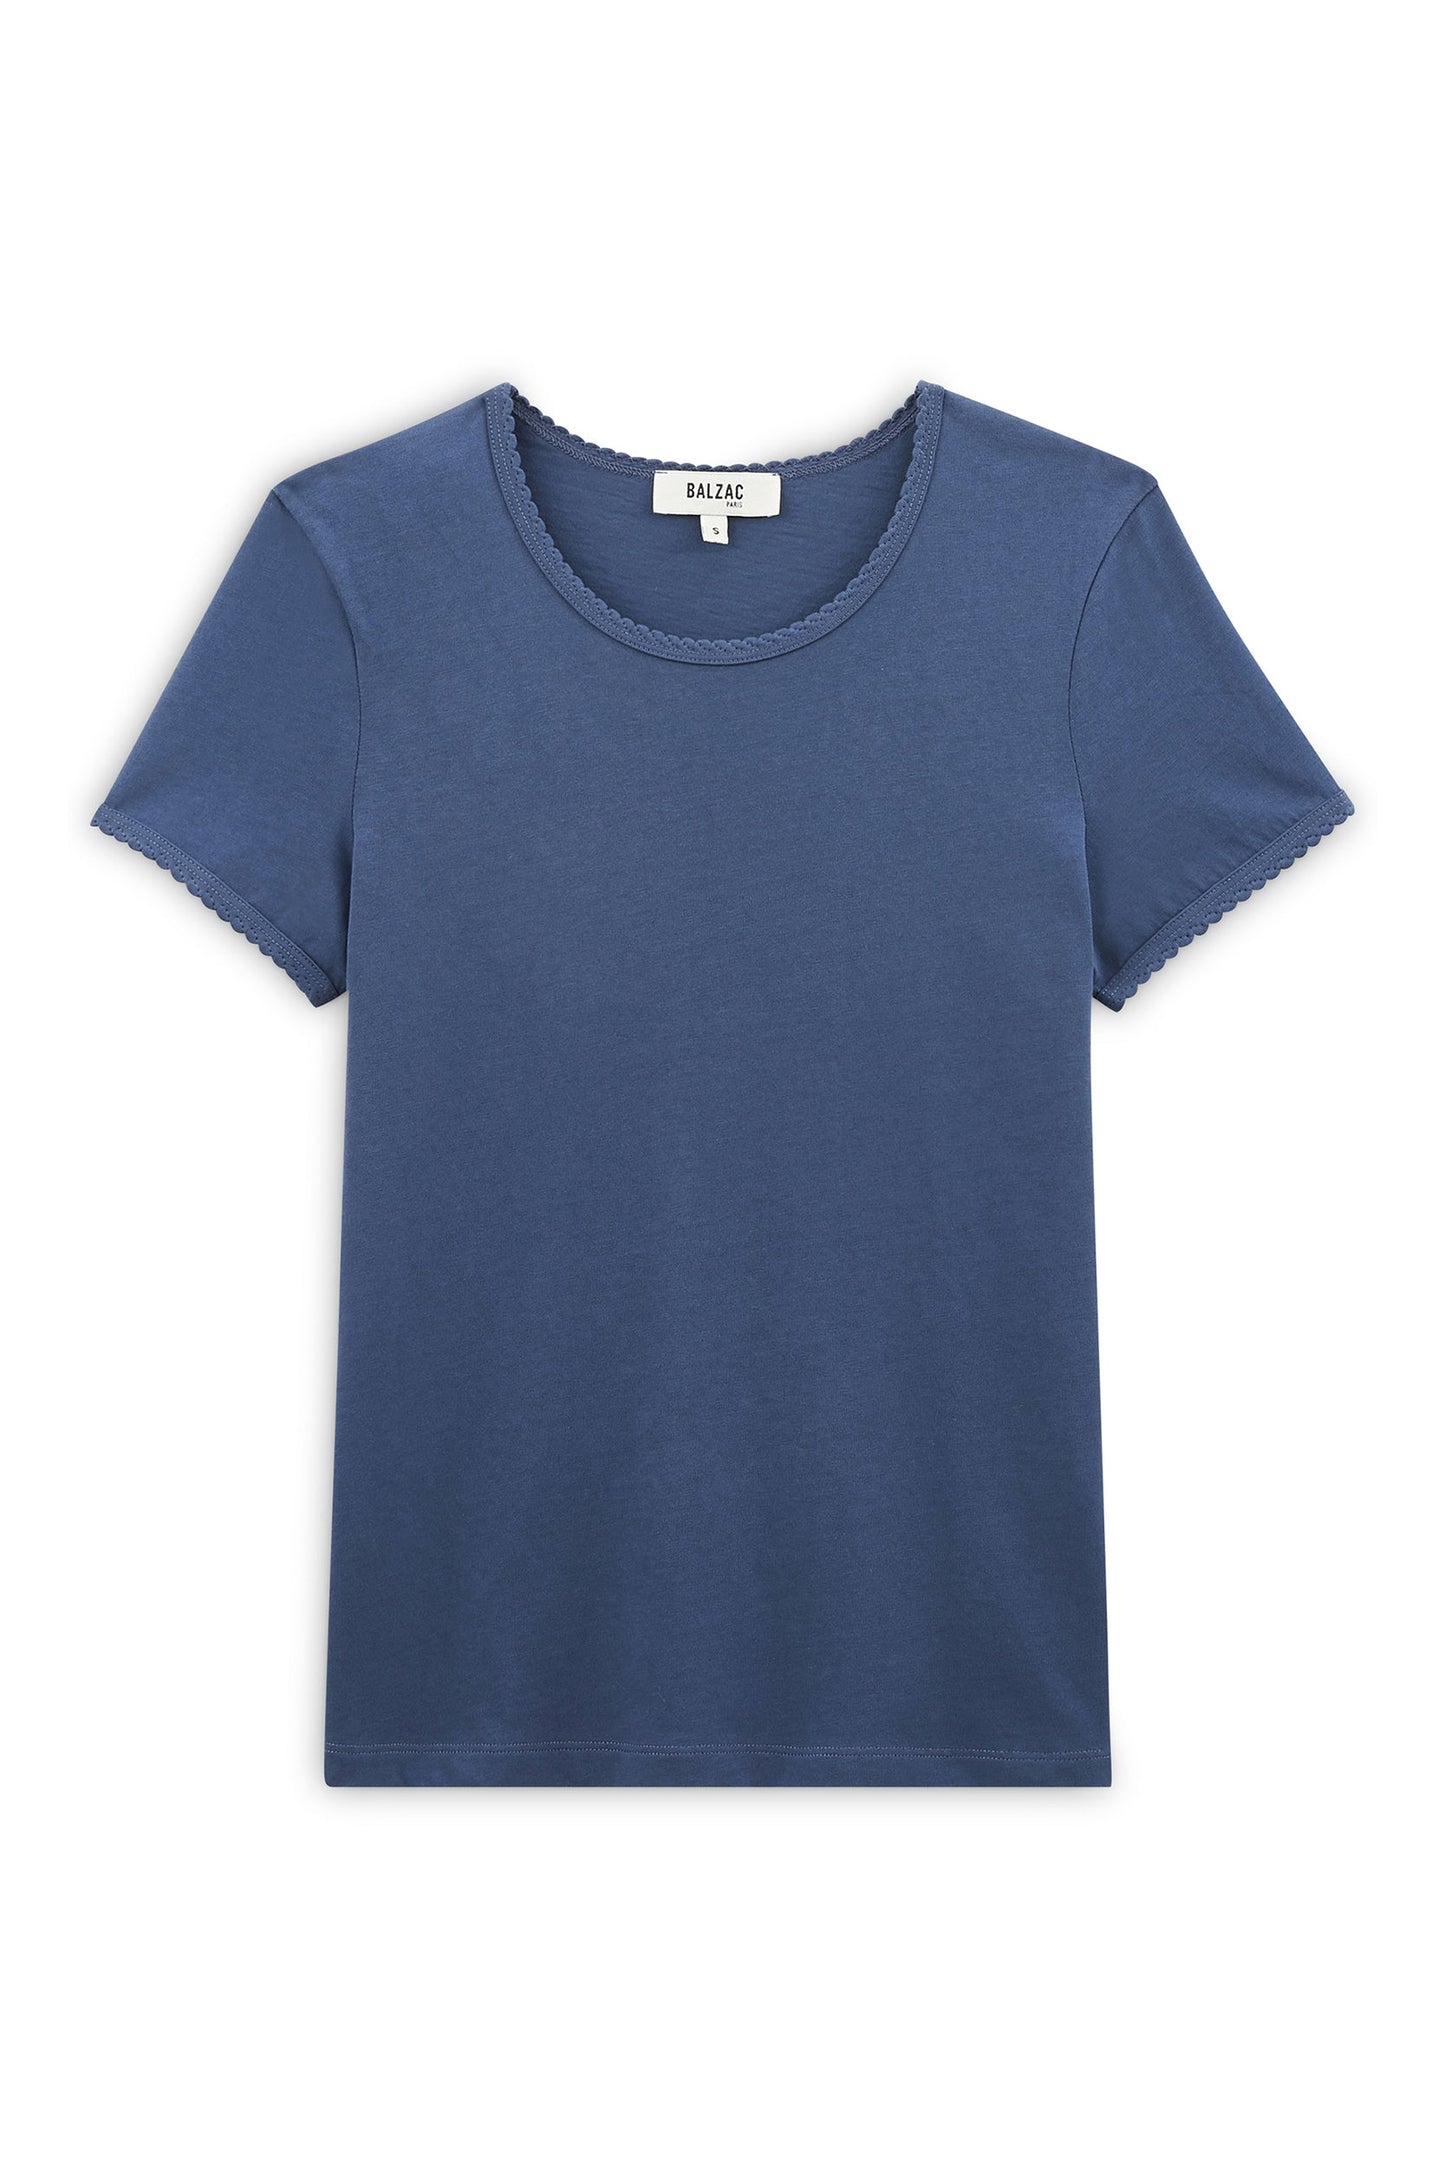 Tee-shirt Willow bleu gris